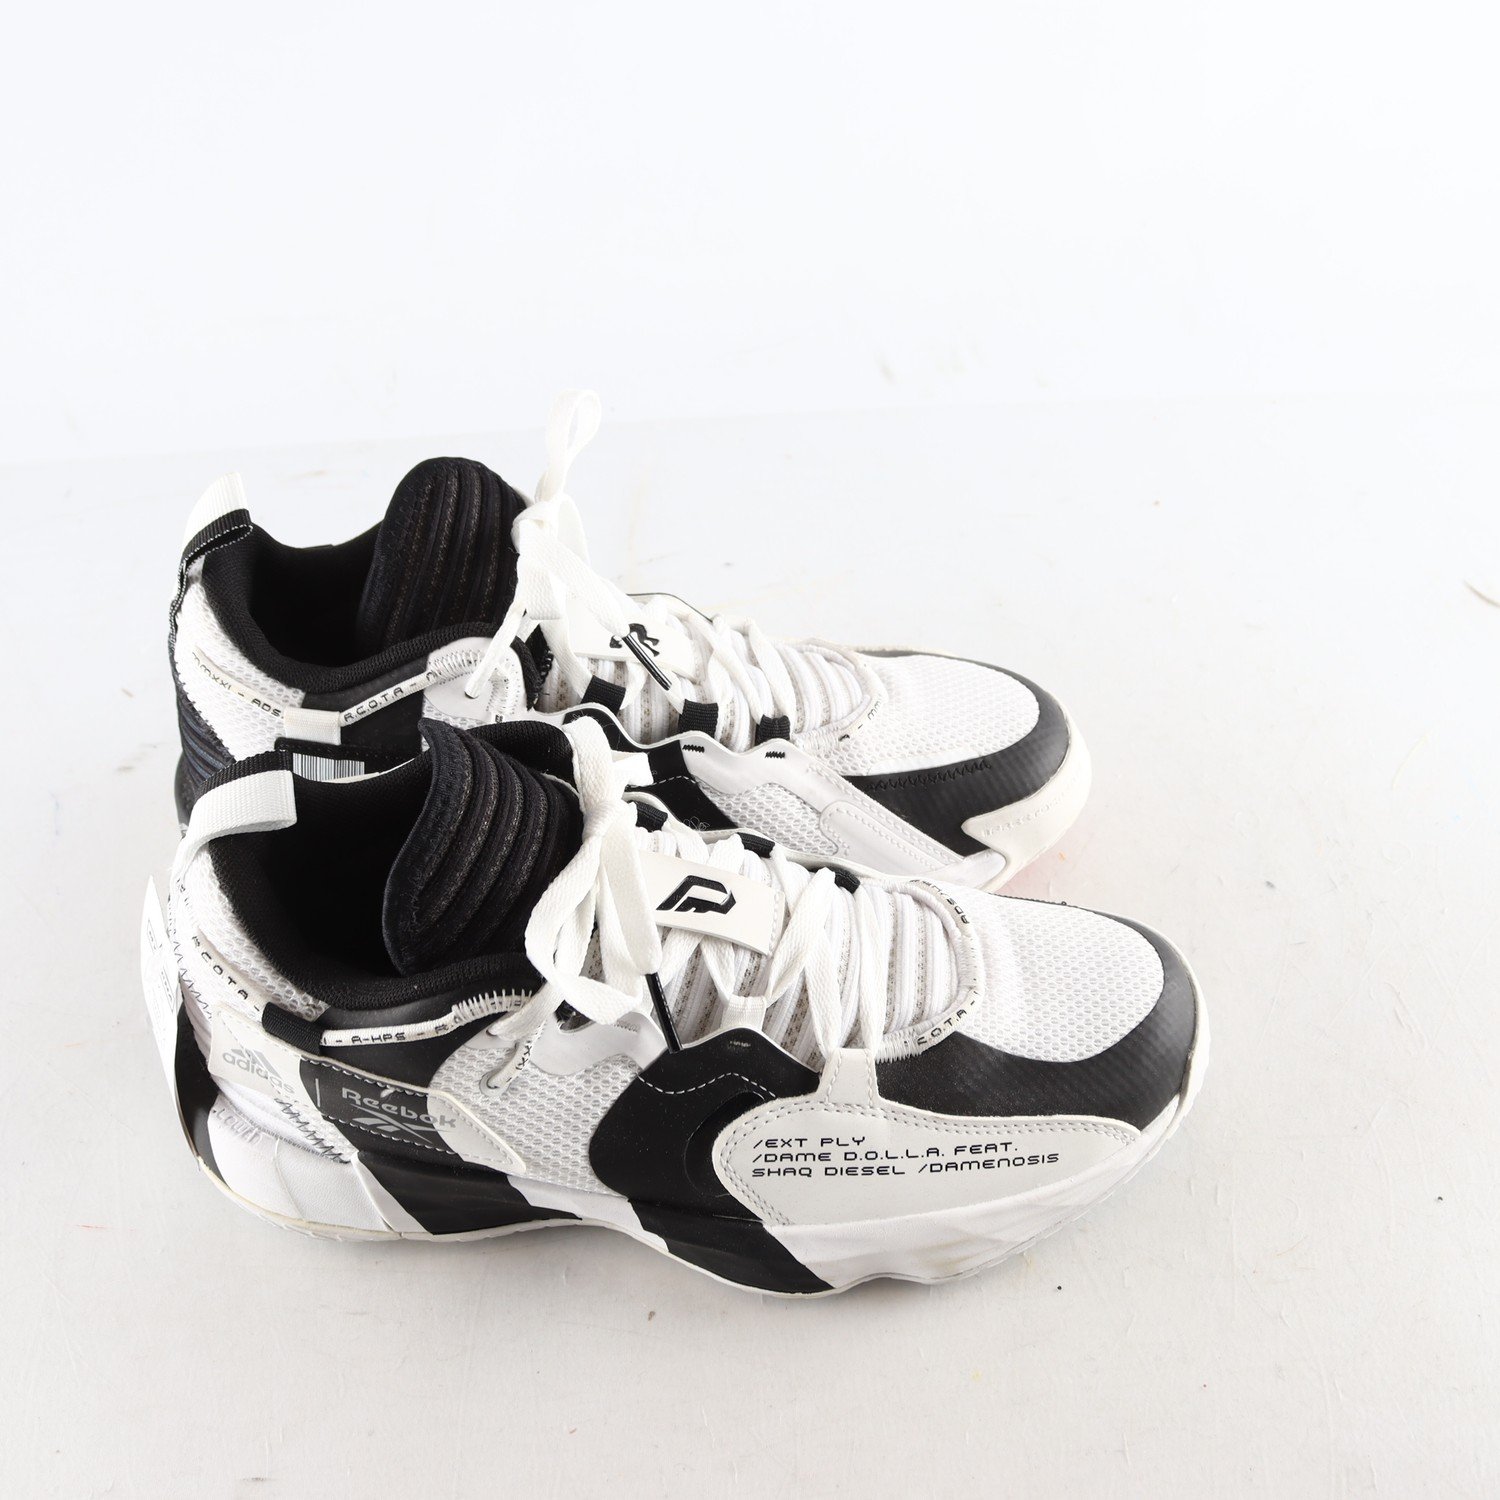 Sneakers, Adidas Dame 7 Shaq Reebok, vit/svart, stl. 40